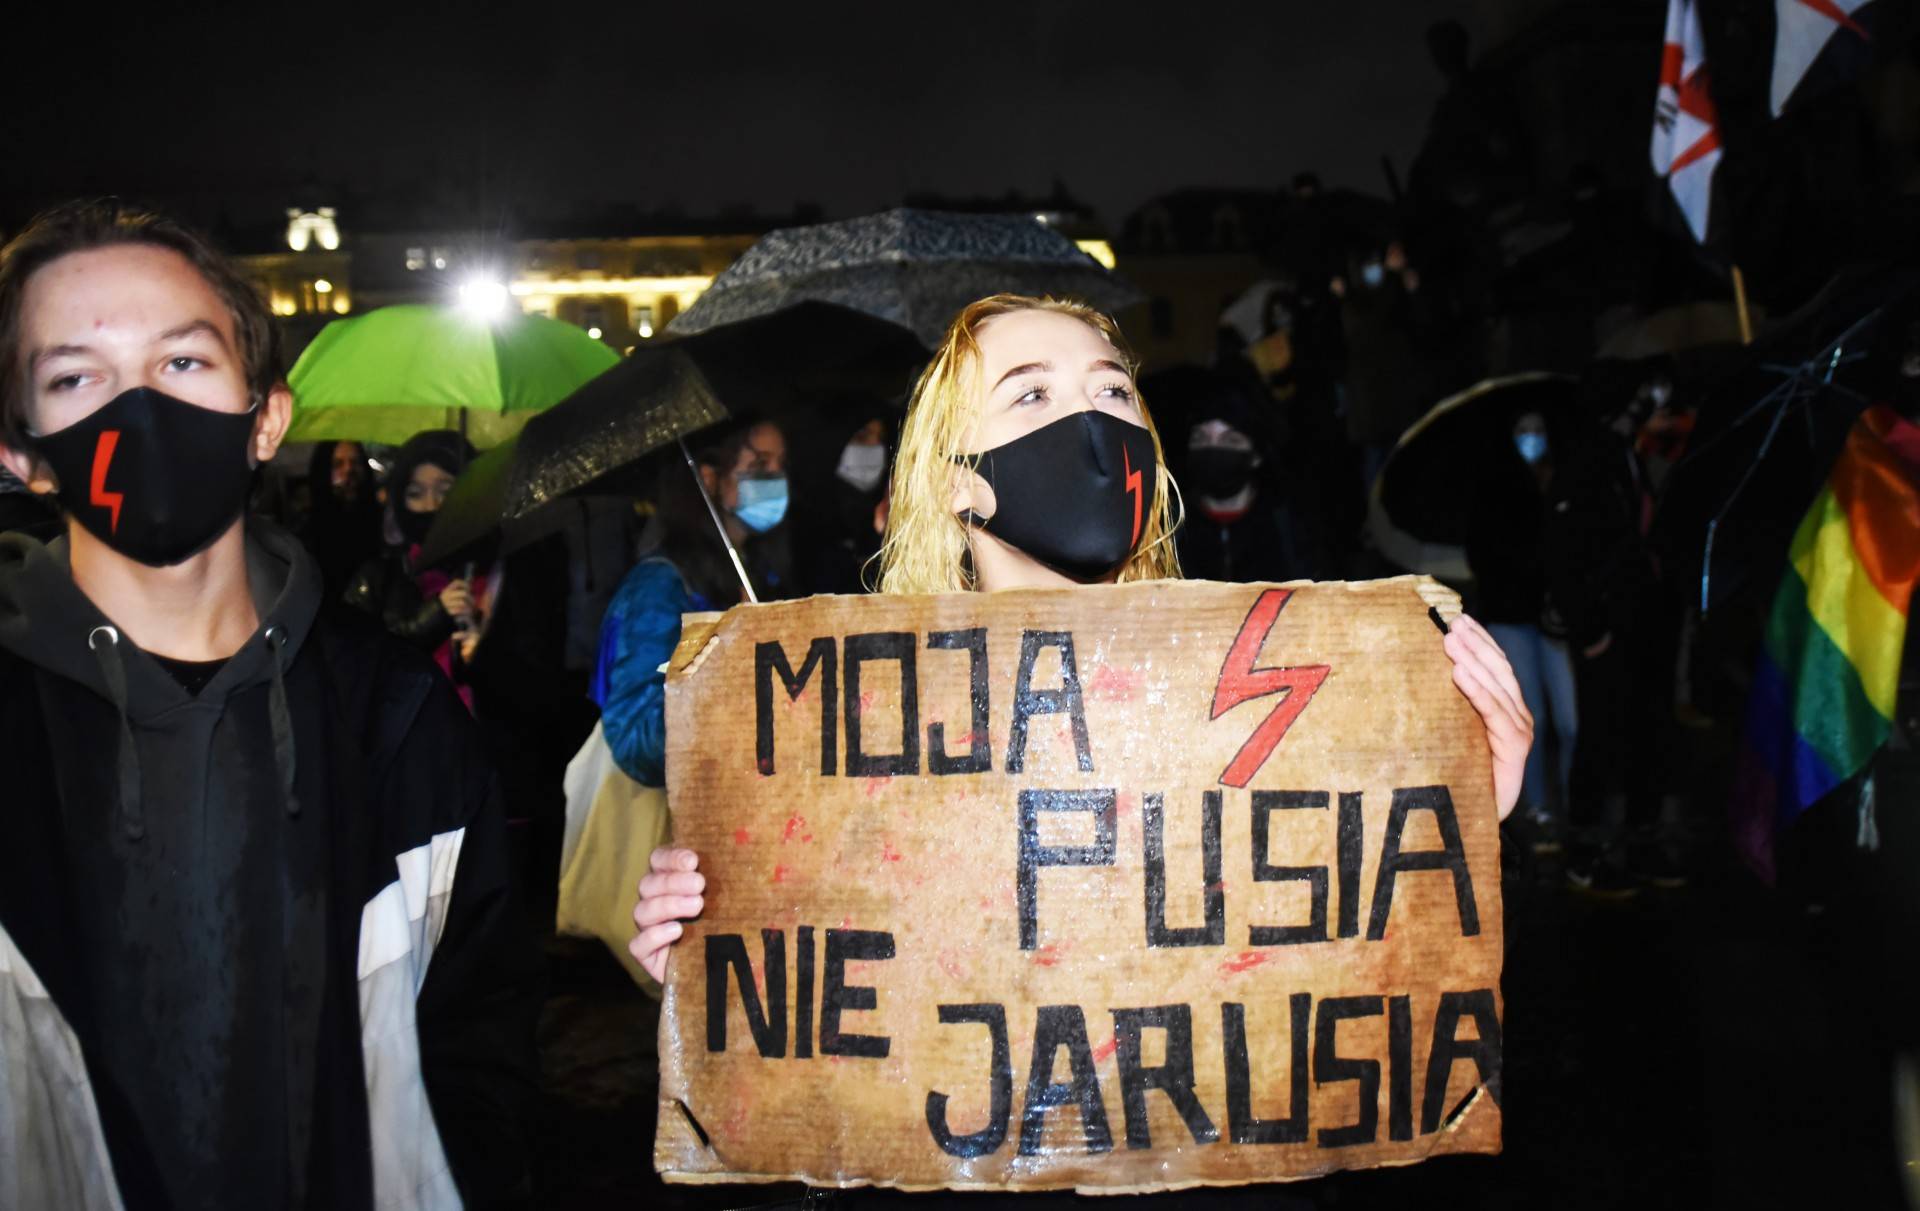 Strajk kobiet: deszcz, błyskawice i tęcza (fot. Marek Lasyk)